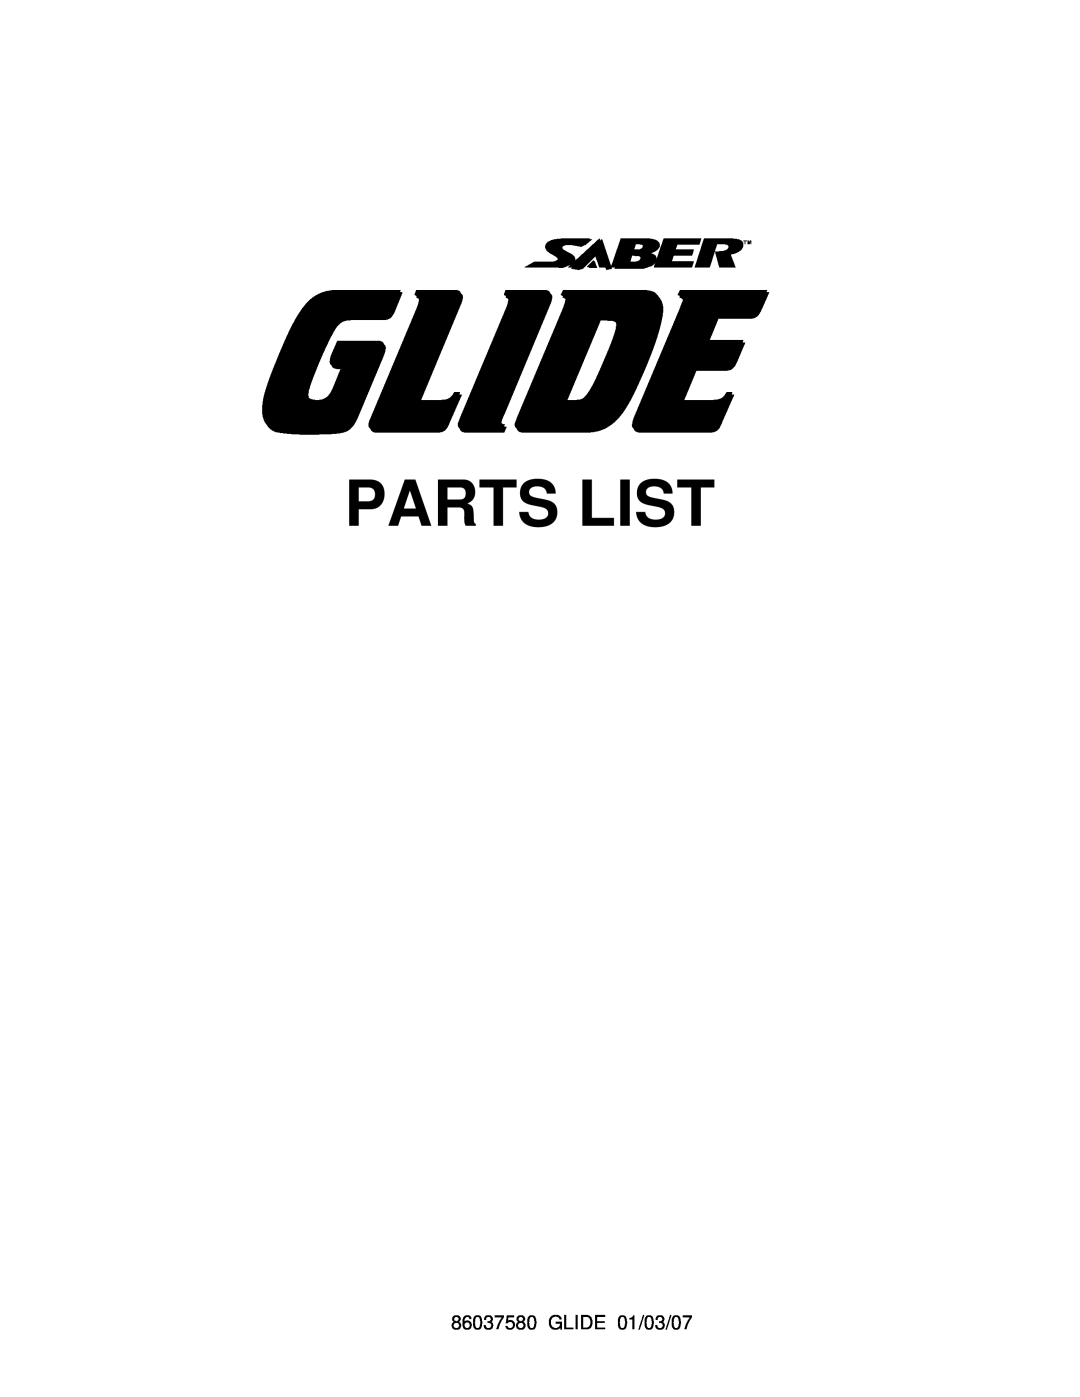 Windsor 86037580 manual Parts List, GLIDE 01/03/07 